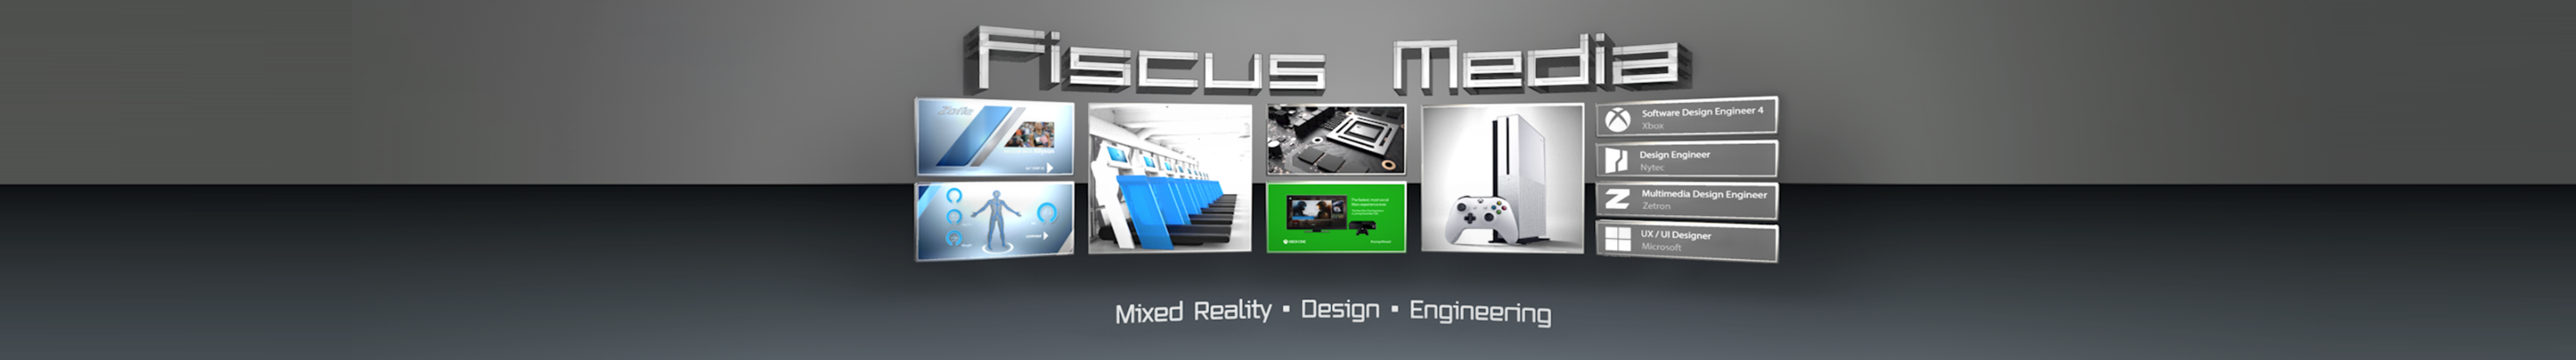 Banner de perfil de Fiscus Media